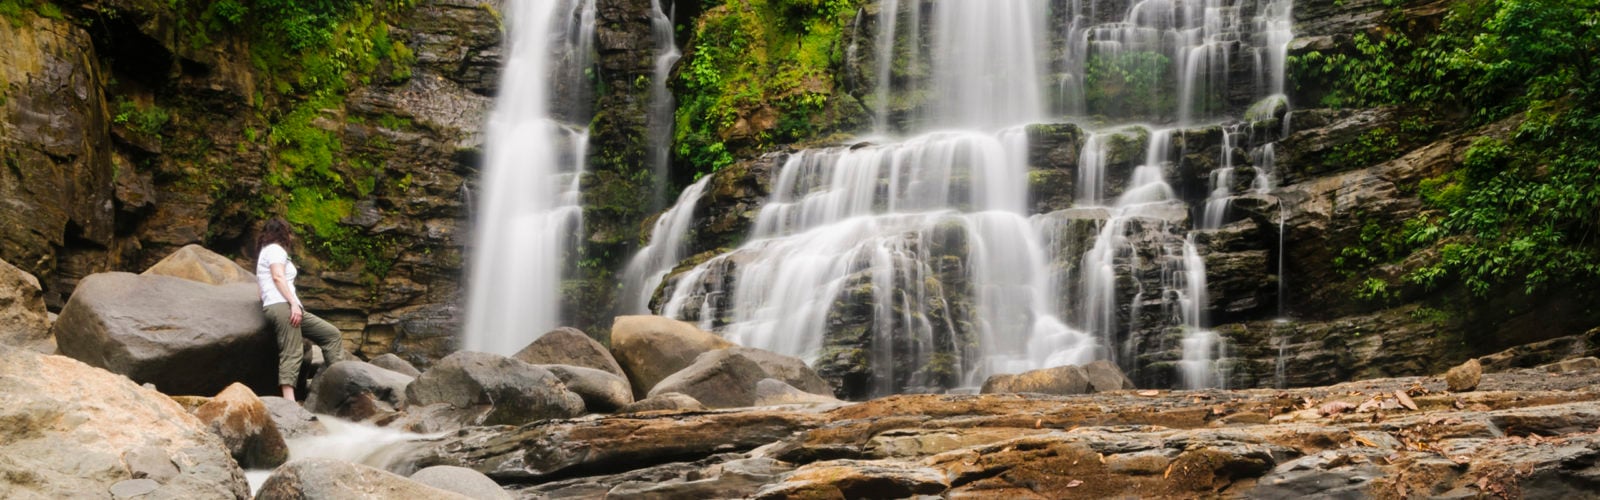 Traveller watching Nauyuca Waterfall, Dominical, Costa Rica.